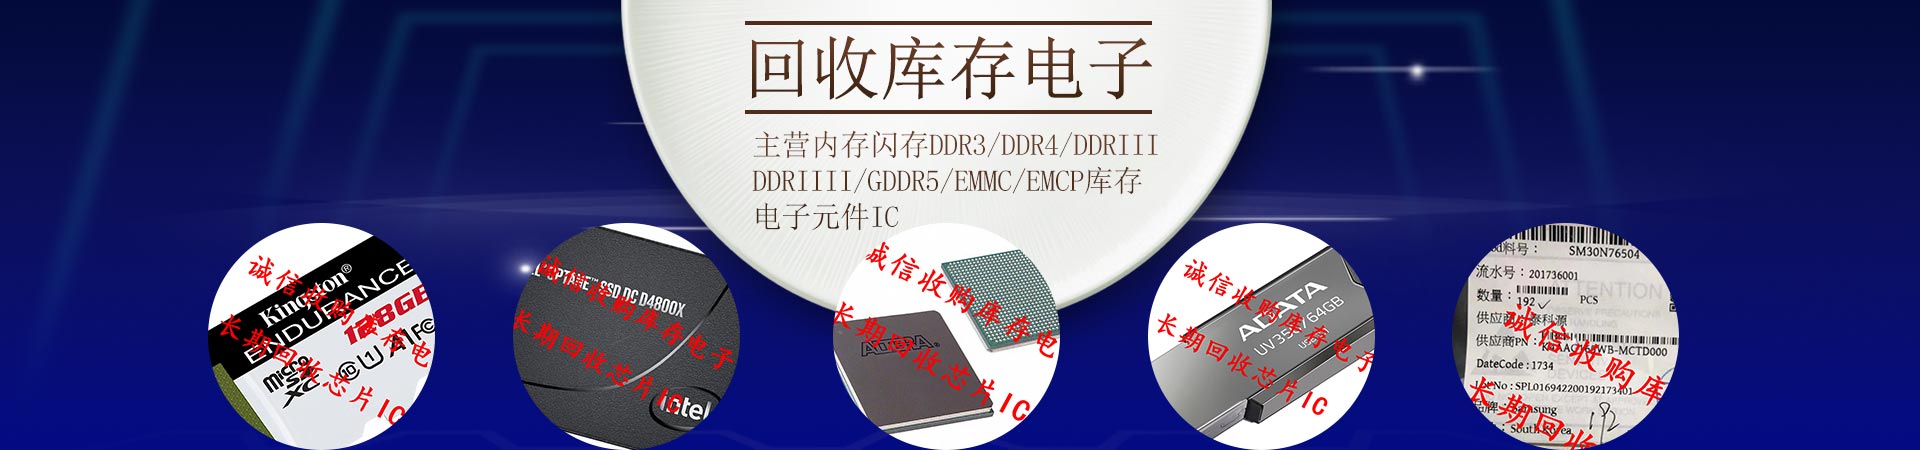 主营内存闪存DDR3/DDR4/DDRIII/DDRIIII/GDDR5/EMMC/EMCP库存电子元件IC